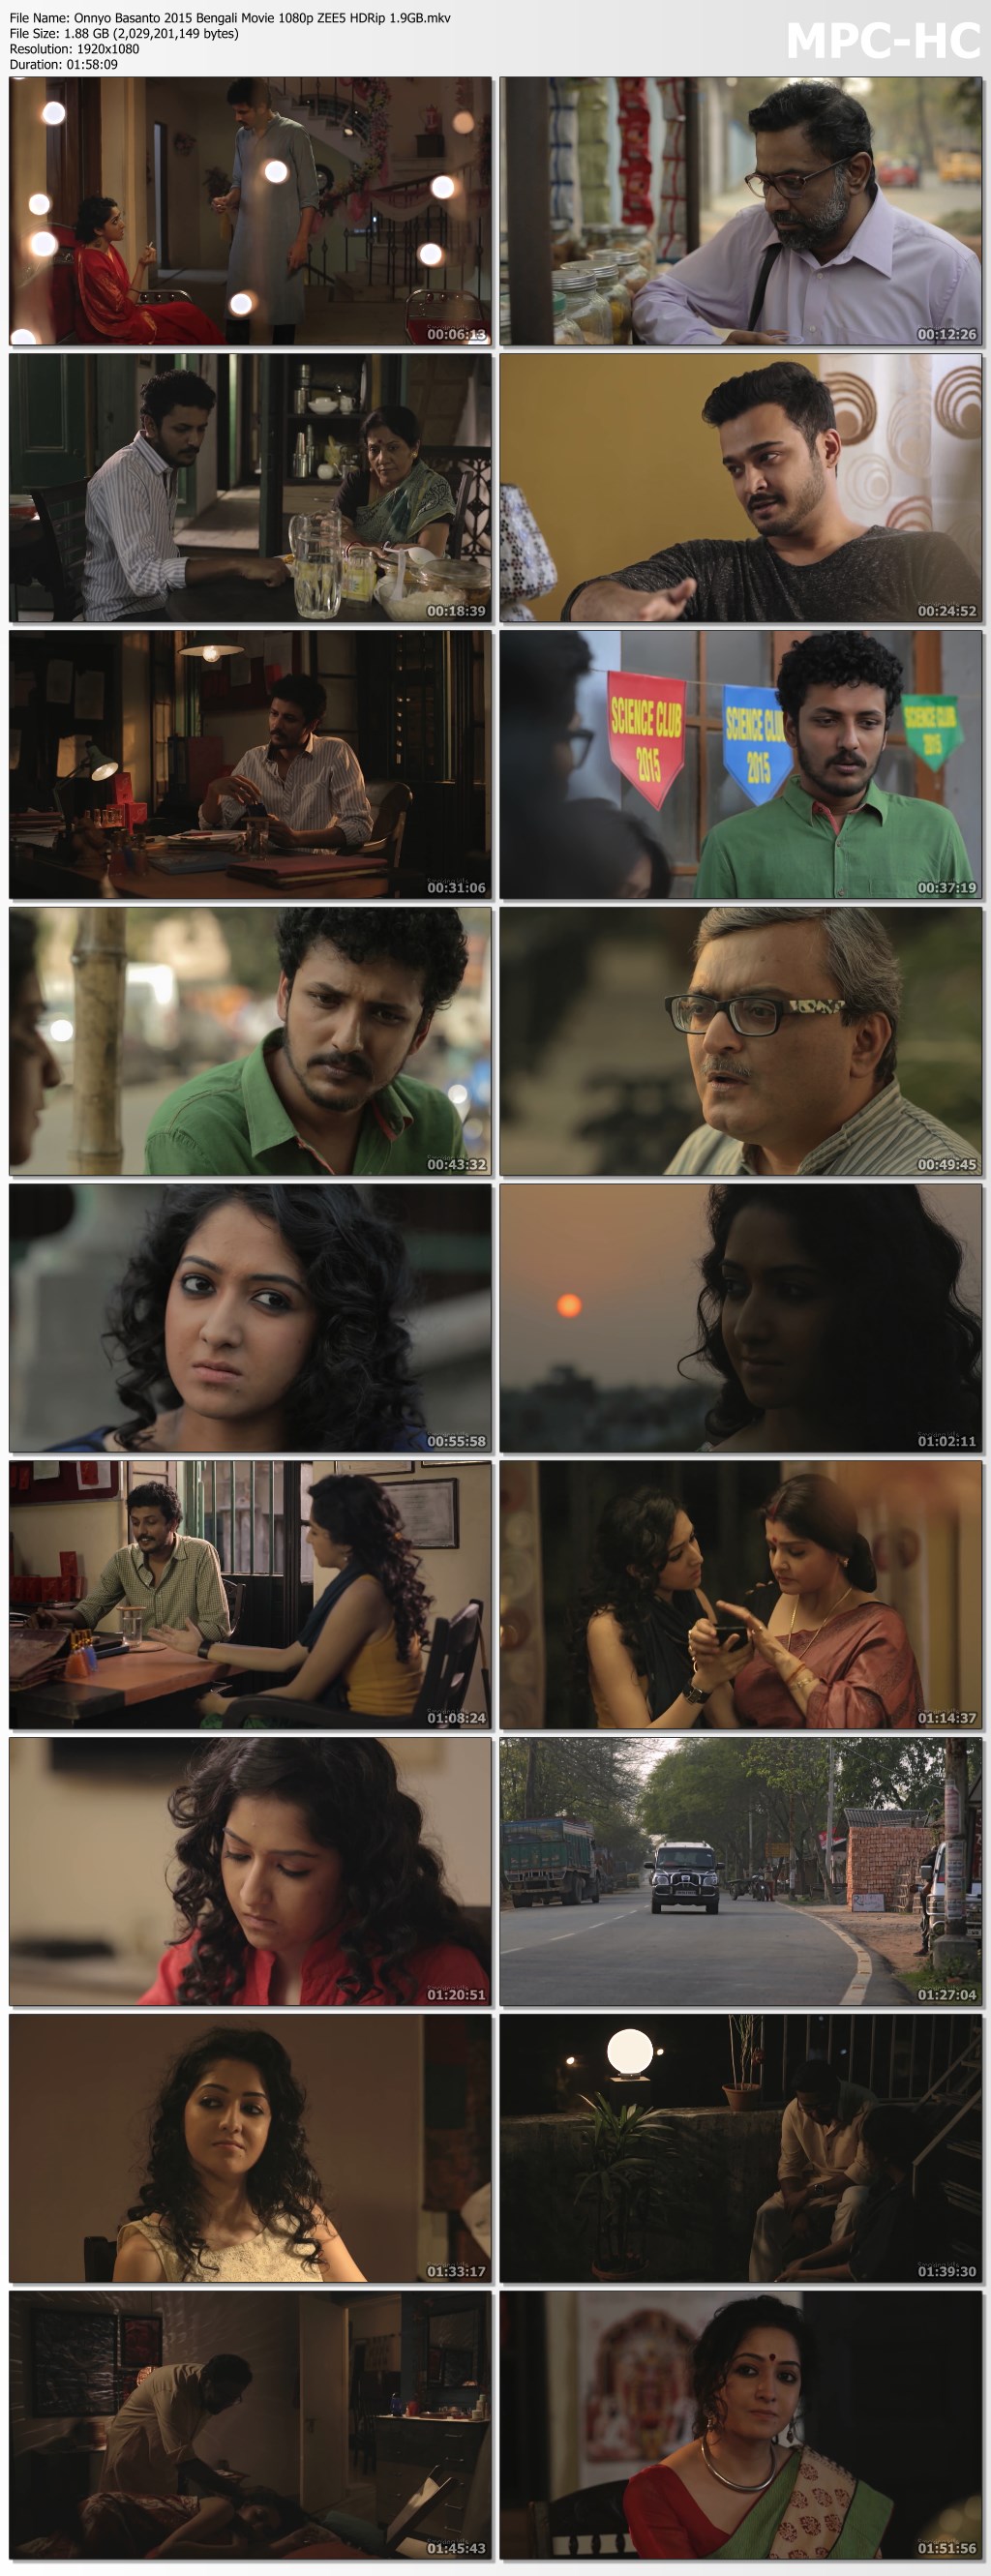 Onnyo-Basanto-2015-Bengali-Movie-1080p-ZEE5-HDRip-1.9GB.mkv_thumbs.jpg